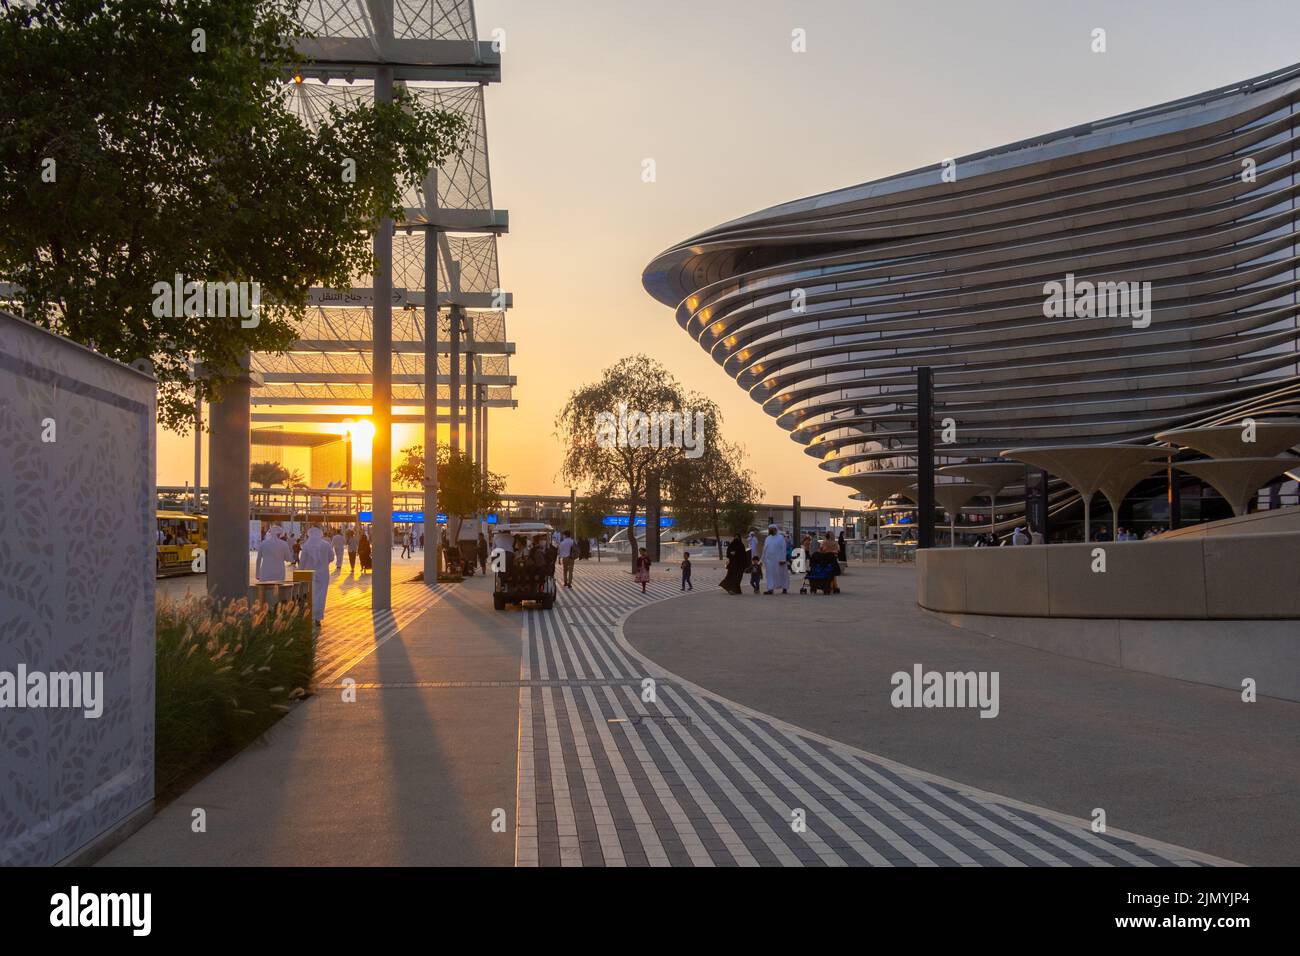 VAE, Dubai - 30. November 2021: Ausstellung EXPO 2020. Menschen gehen zwischen Pavillons entlang. Ausstellungshalle Mobilität in den Abendstrahlen des Sonnenuntergangs. Stockfoto